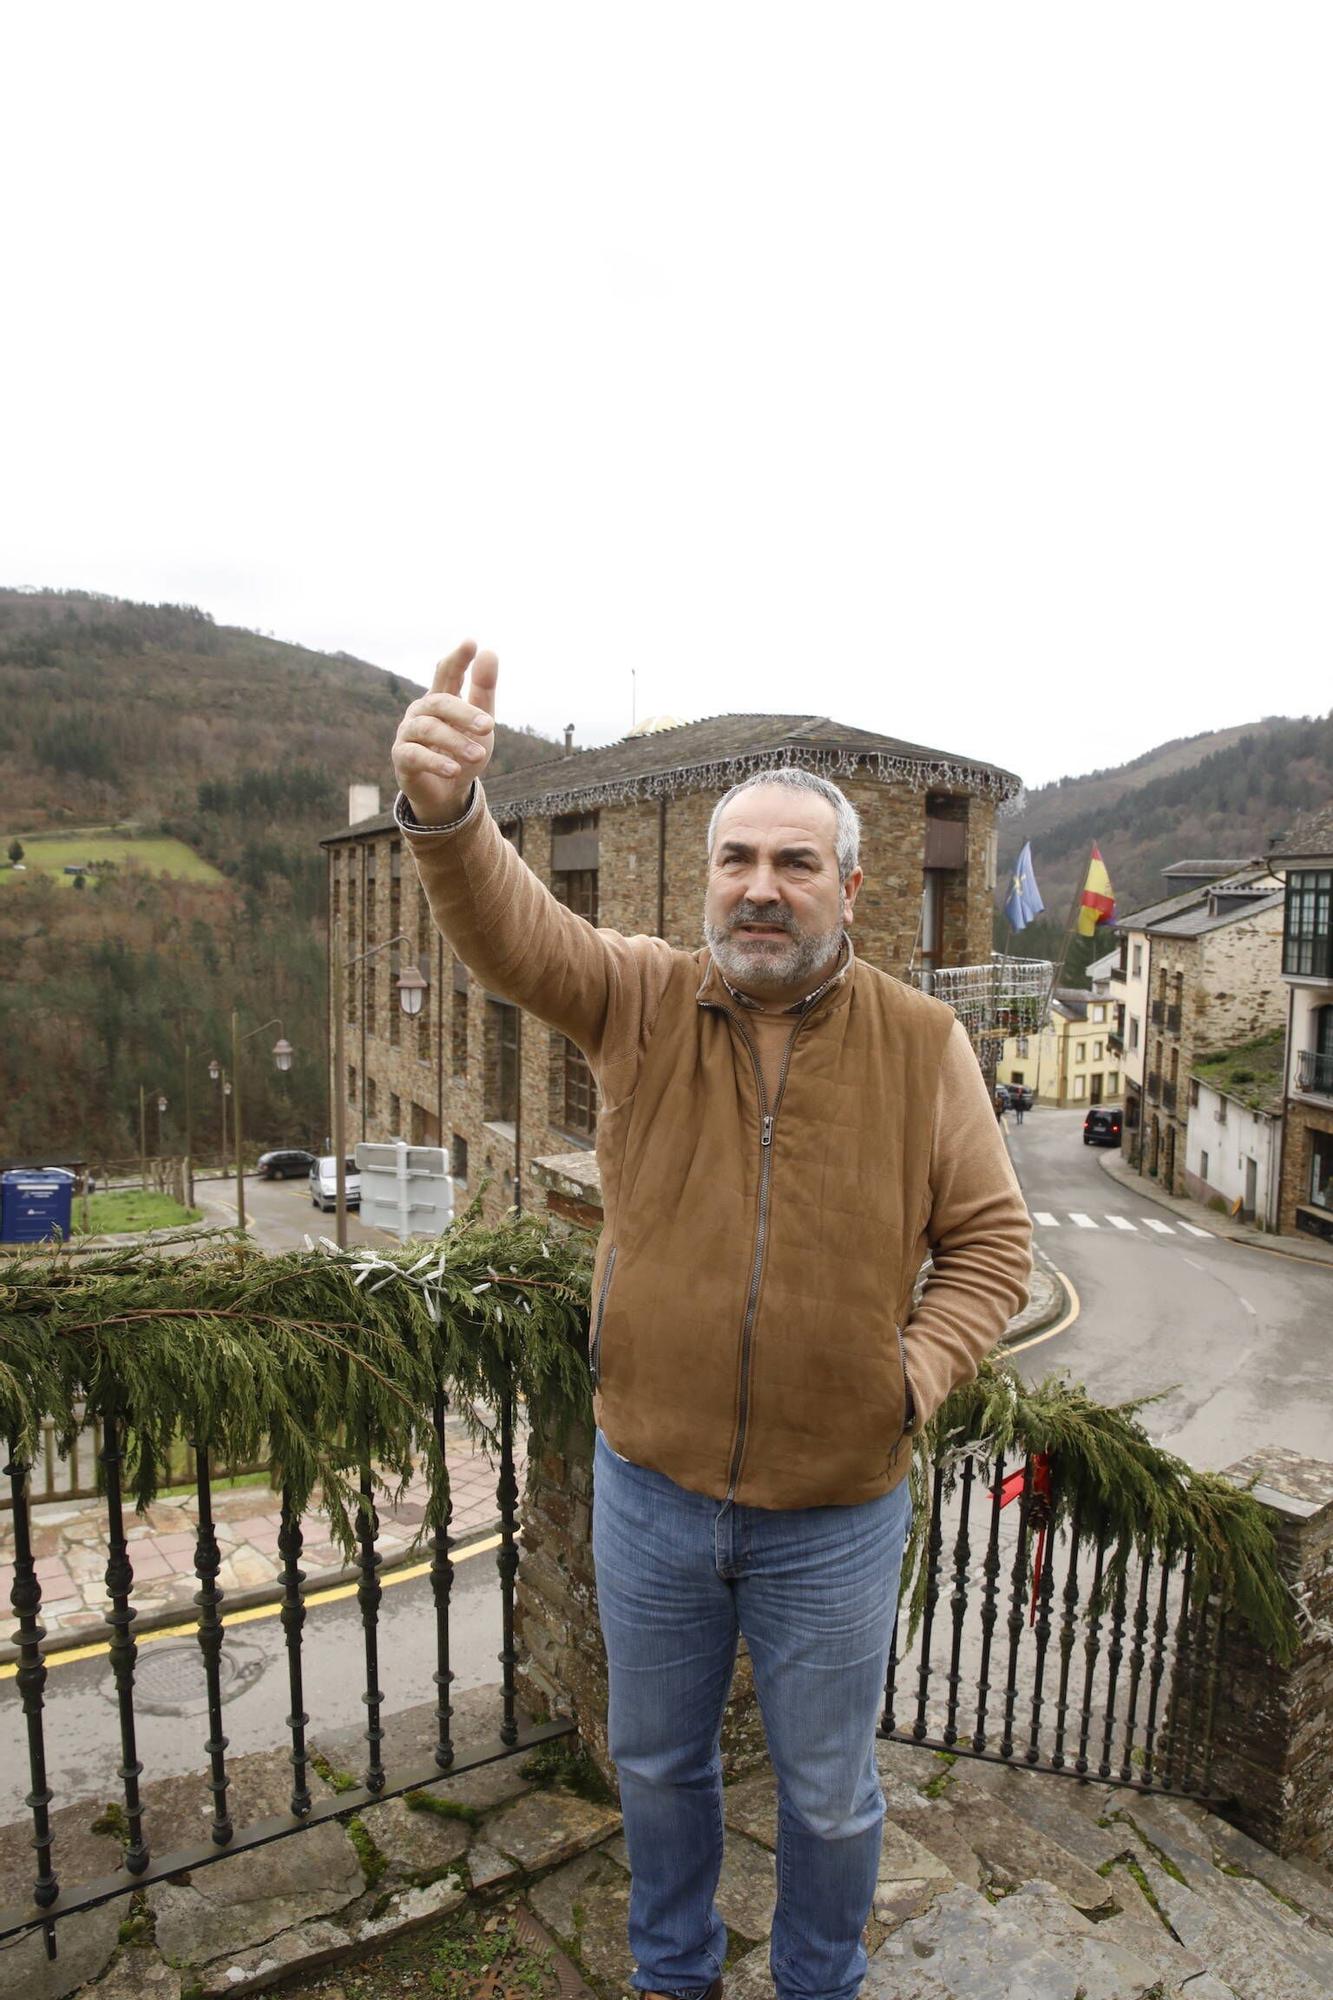 En imágenes: situación eólica en Asturias